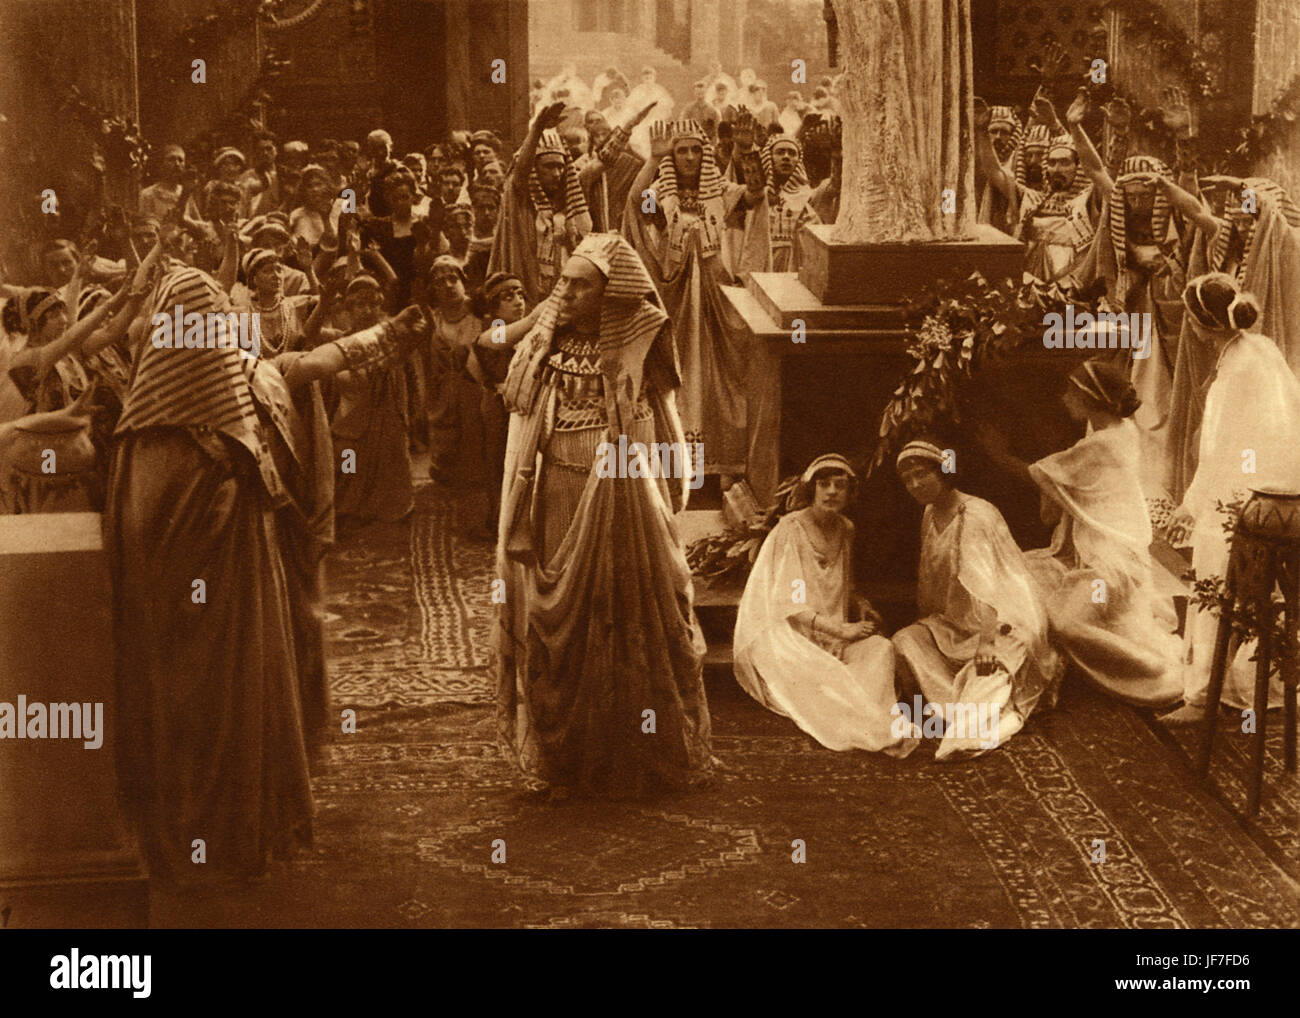 Letzten Tage von Pompeji, 1913. Im Tempel der Isis, italienischen Stummfilm basiert auf dem Roman "Die letzten Tage von Pompeji" (1834) von Edward Bulwer-Lytton. Englischer Schriftsteller, Dichter und Politiker, 25 Mai 1803 – 18. Januar 1873. Stockfoto